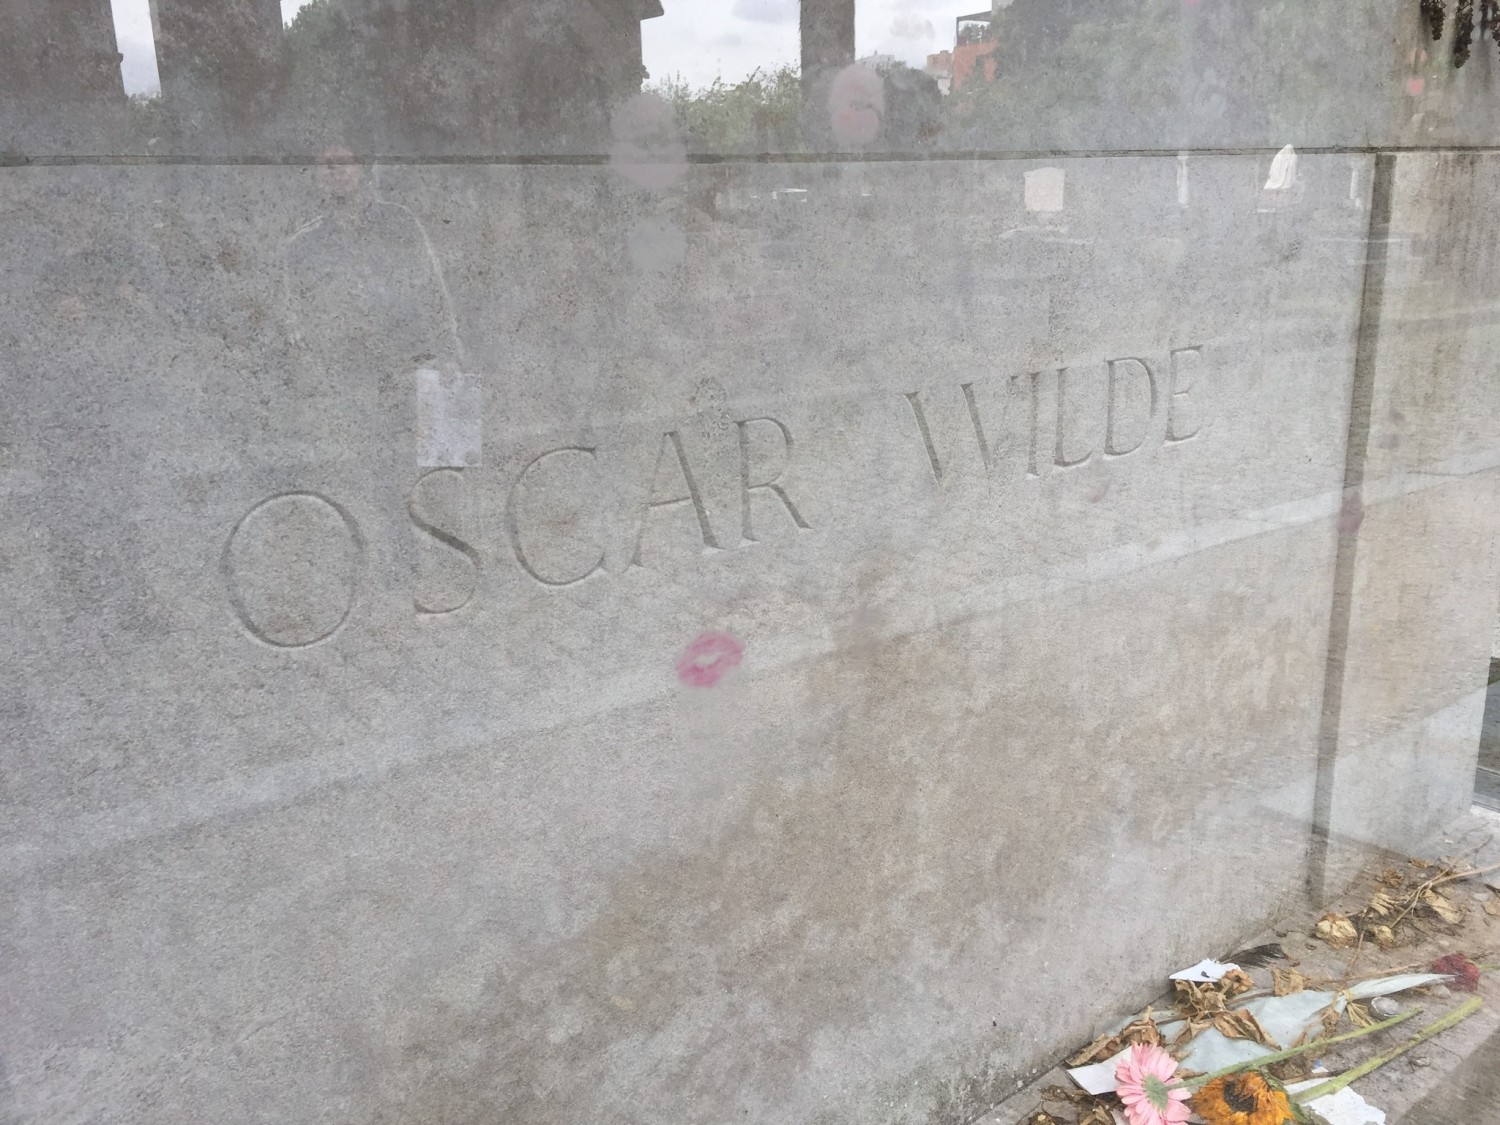 Oscar Wilde (1854-1900) var en irsk forfatter og en kvindebedårer, derfor de mange kys på hans gravsted. Oscar Wilde var dog homoseksuel